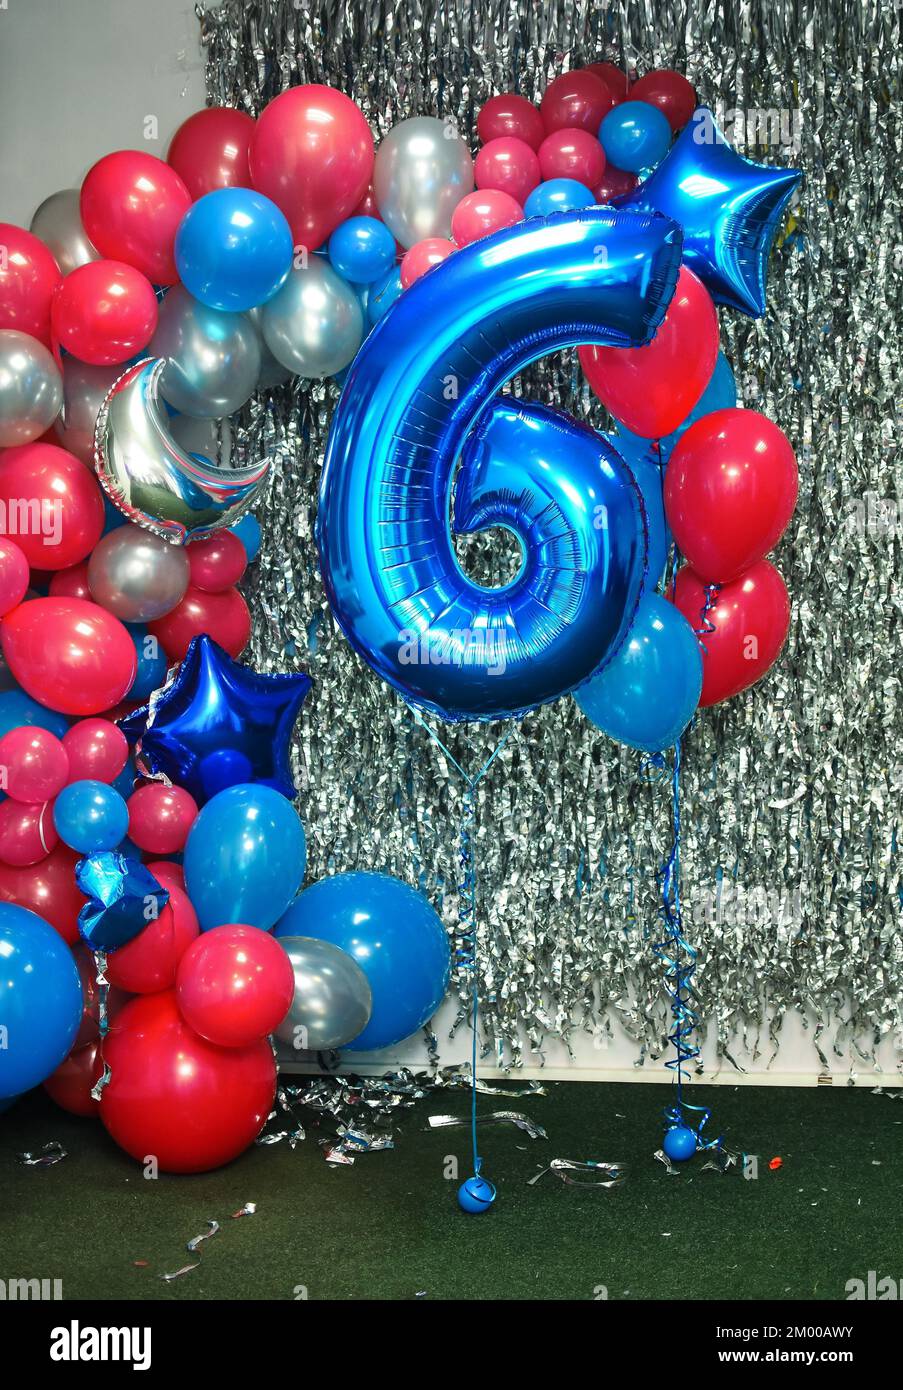 mongolfiera per celebrare i 6 anni. Una composizione di palloncini